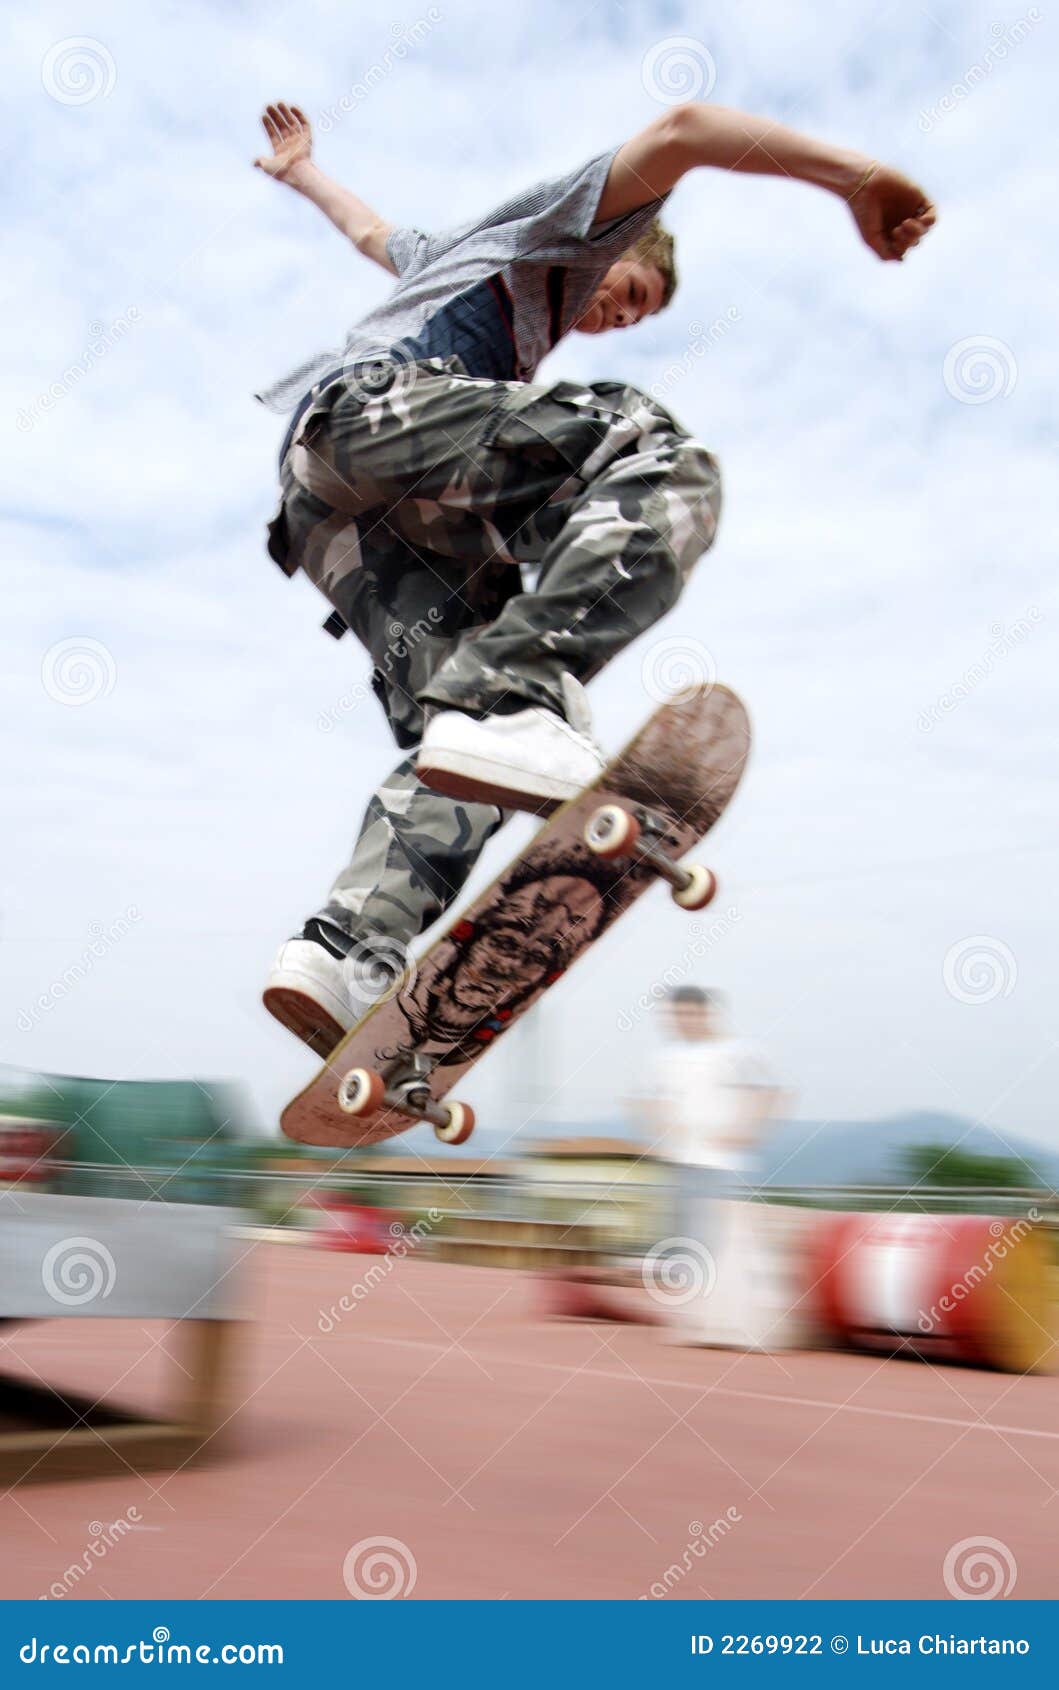 Jump on Skate stock photo. Image of wheel, legs, skateboard - 2269922